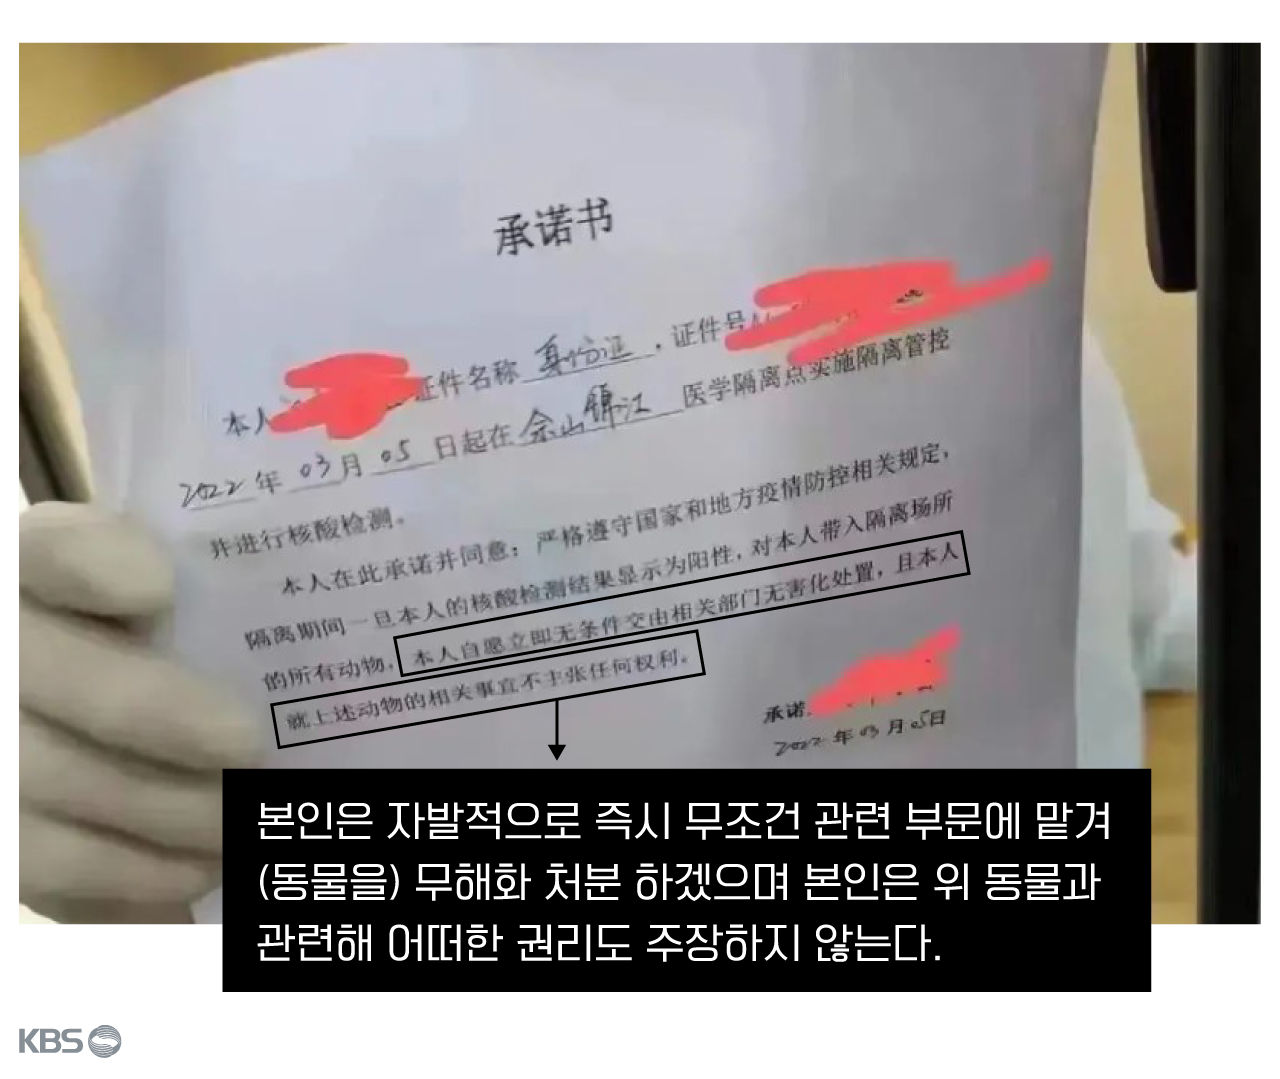  지난 5일 상하이 한 격리시설에 들어가게 된 사람이 자신이 동물 무해화 처분에 대한 동의서를 써야 했다고 공개했다.  